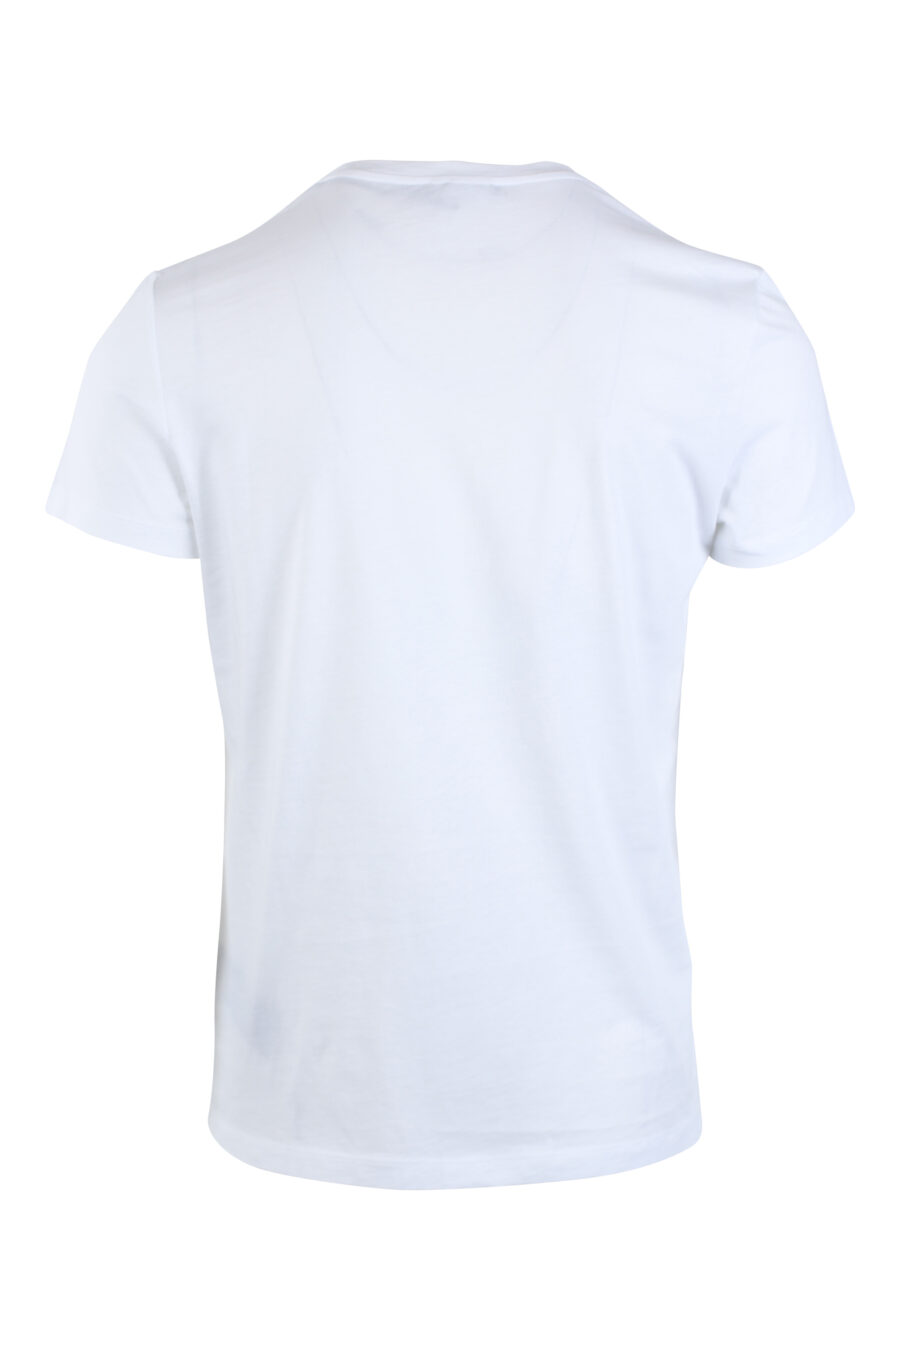 White T-shirt with gold maxilogo "paris" - IMG 2613 1